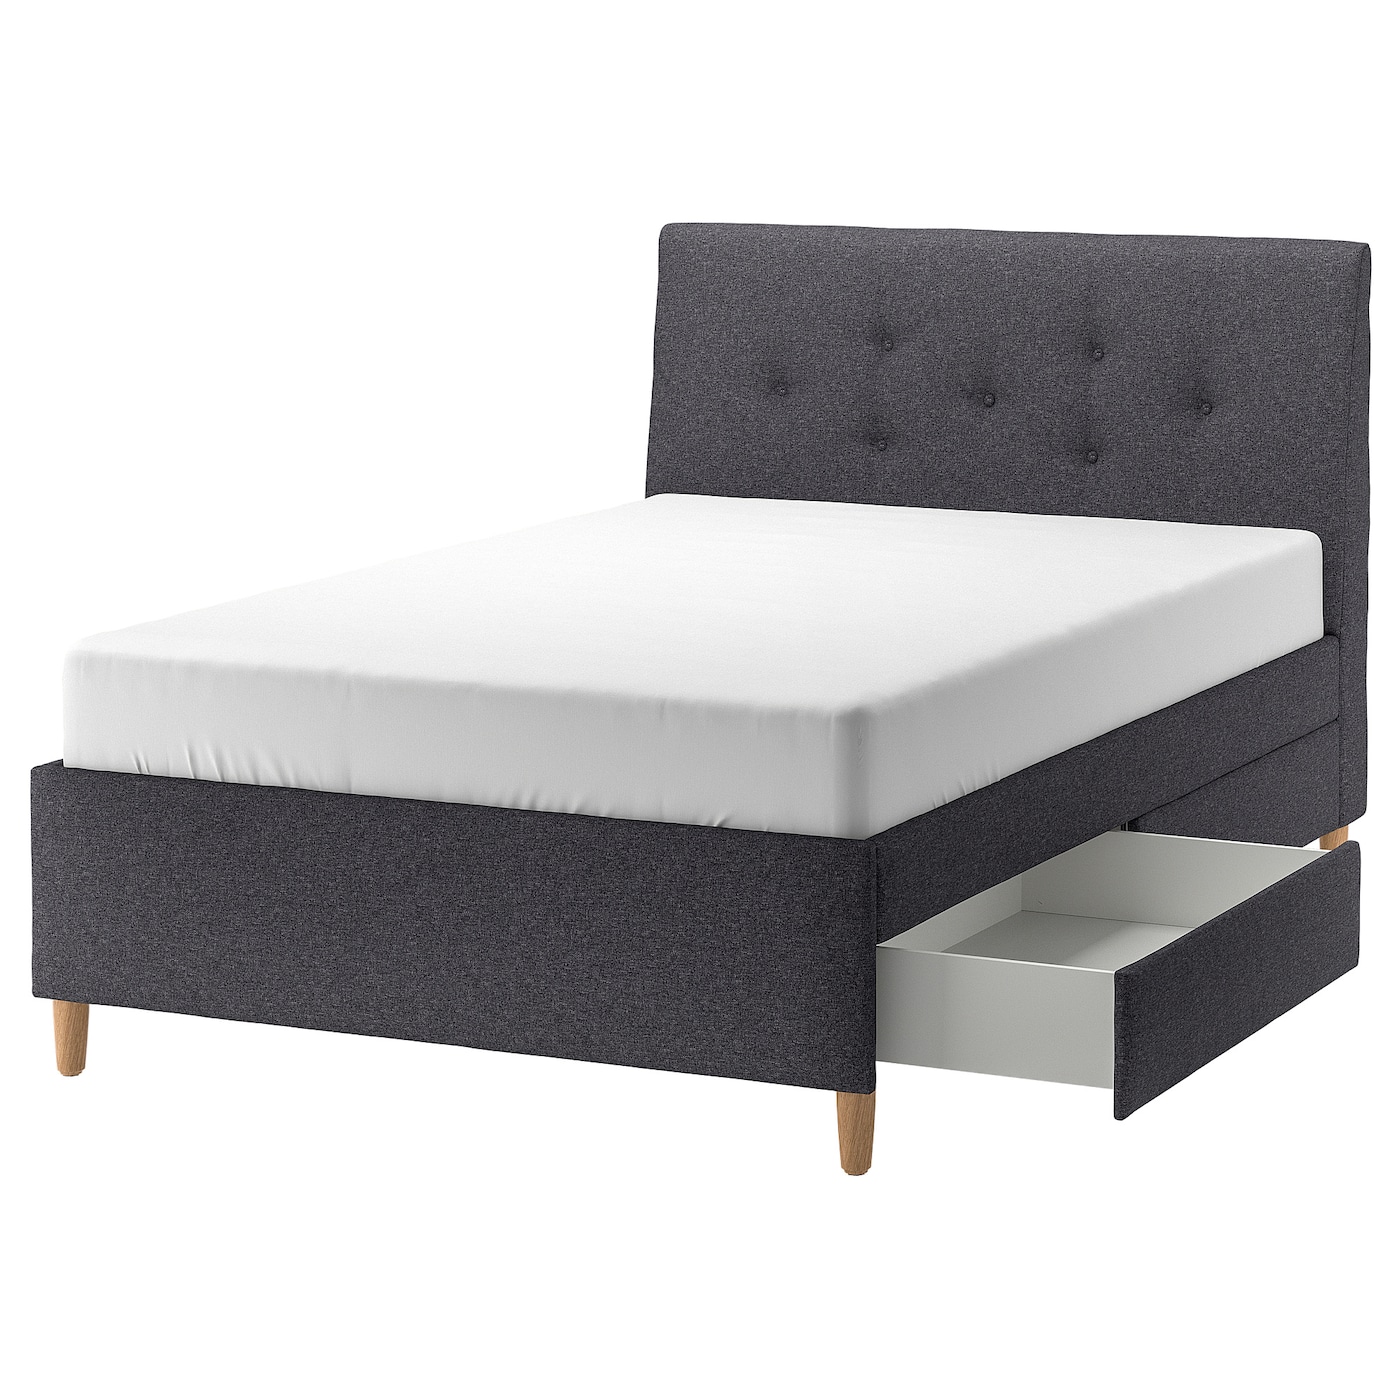 Кровать с мягкой обивкой и выдвижными ящиками - IKEA IDANÄS/IDANAS, 200х140 см, темно-серый, ИДАНЭС ИКЕА